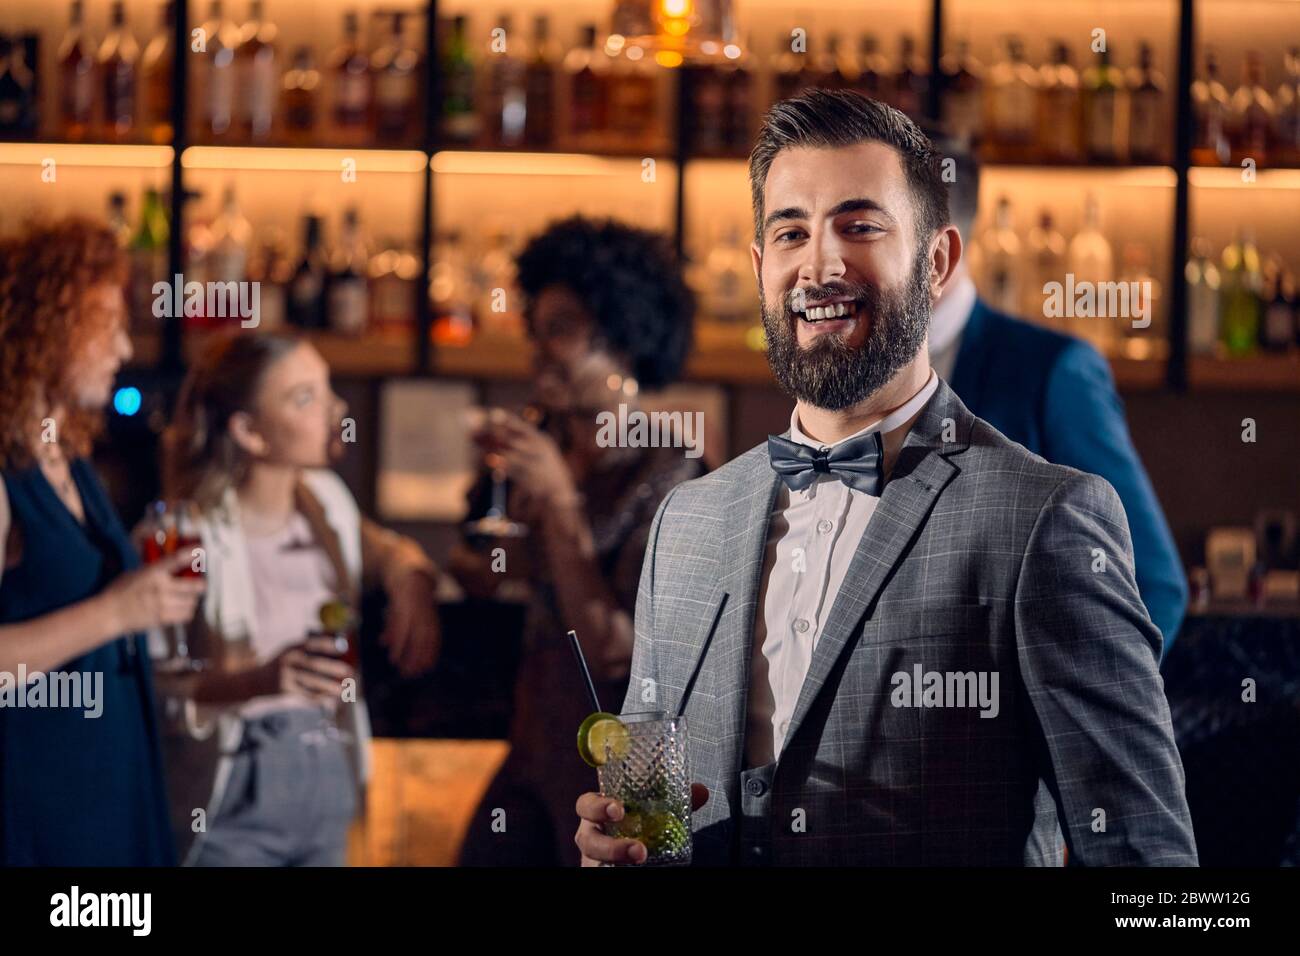 Porträt eines glücklichen jungen Mannes, der einen Cocktail in einer Bar hat Stockfoto